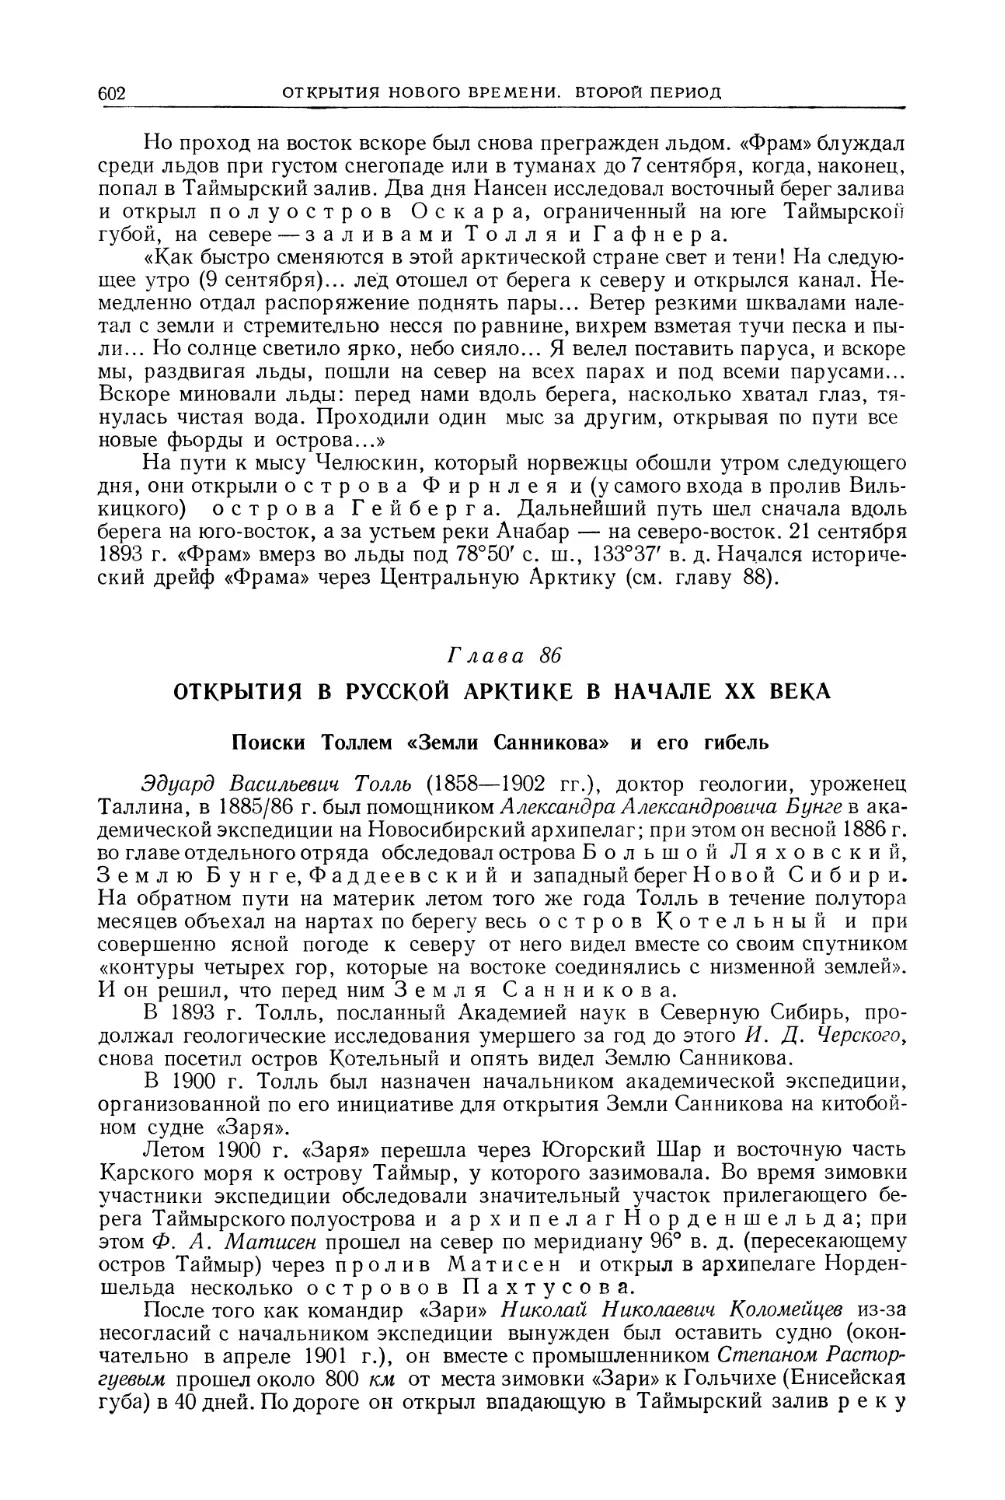 Глава 86. Открытия в Русской Арктике в начале XX века